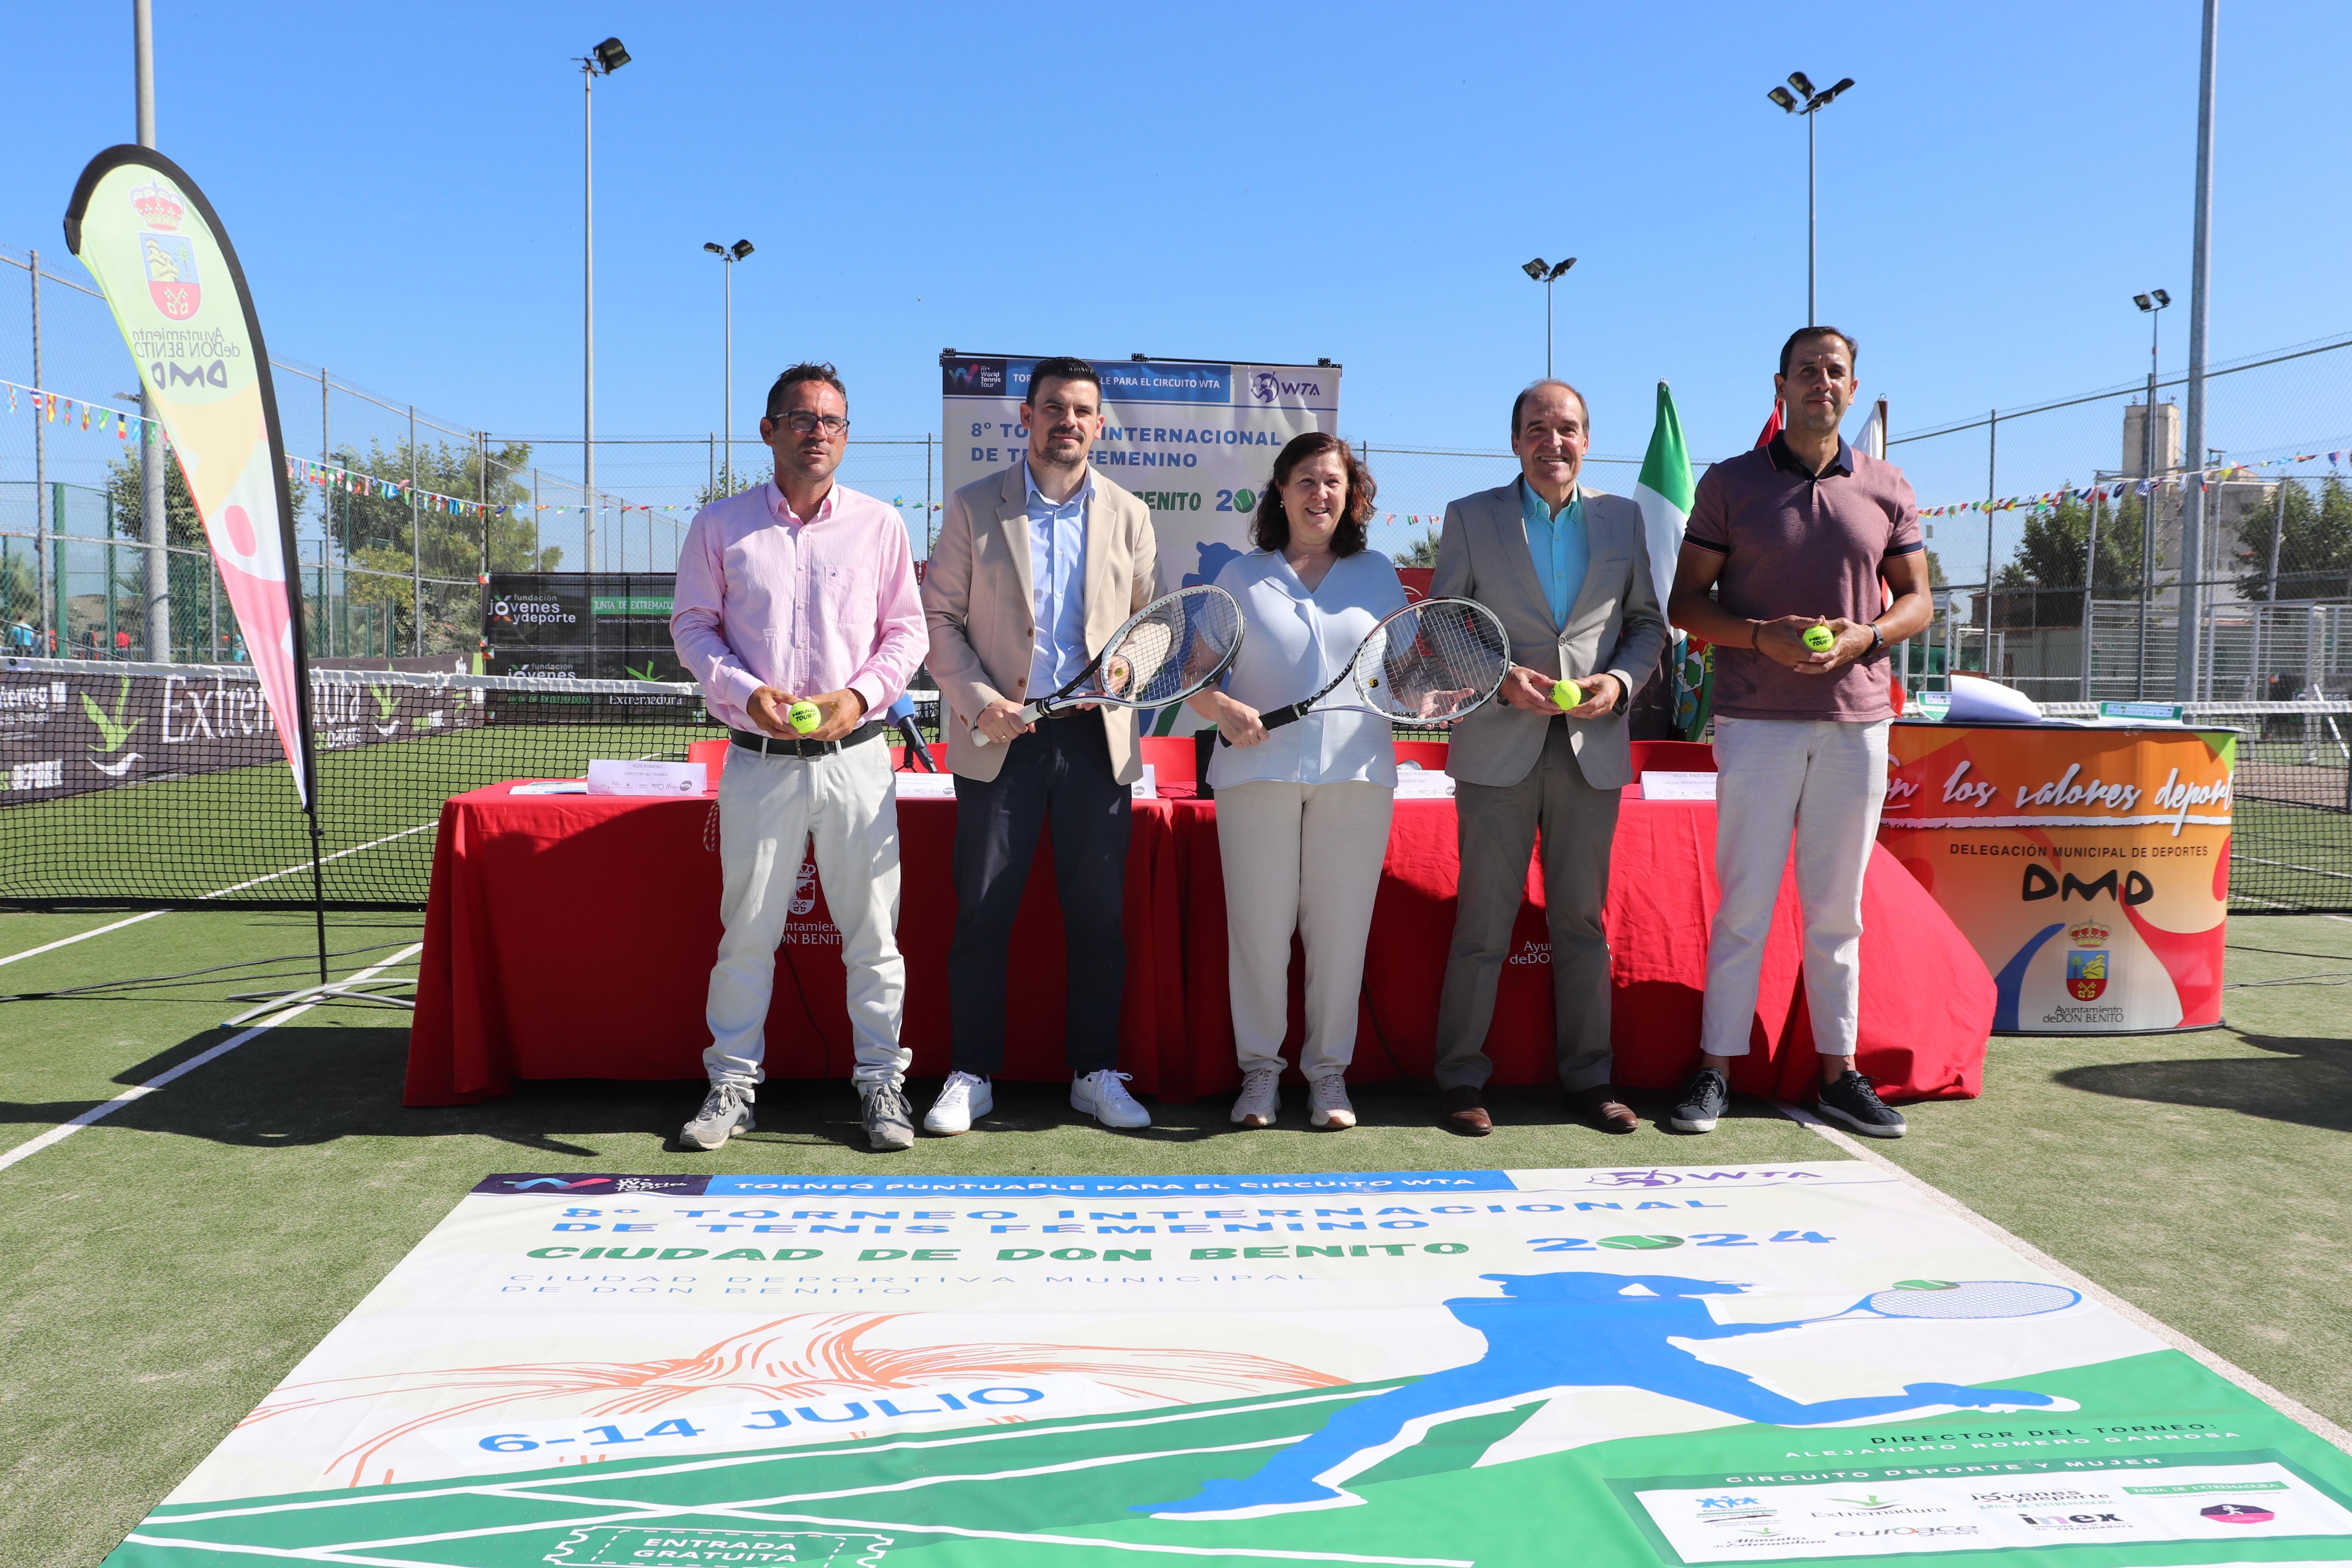 Image 8 of article La Junta de Extremadura apoya el VIII Torneo Internacional de Tenis Femenino que se celebrará en Don Benito del 6 al 14 de julio